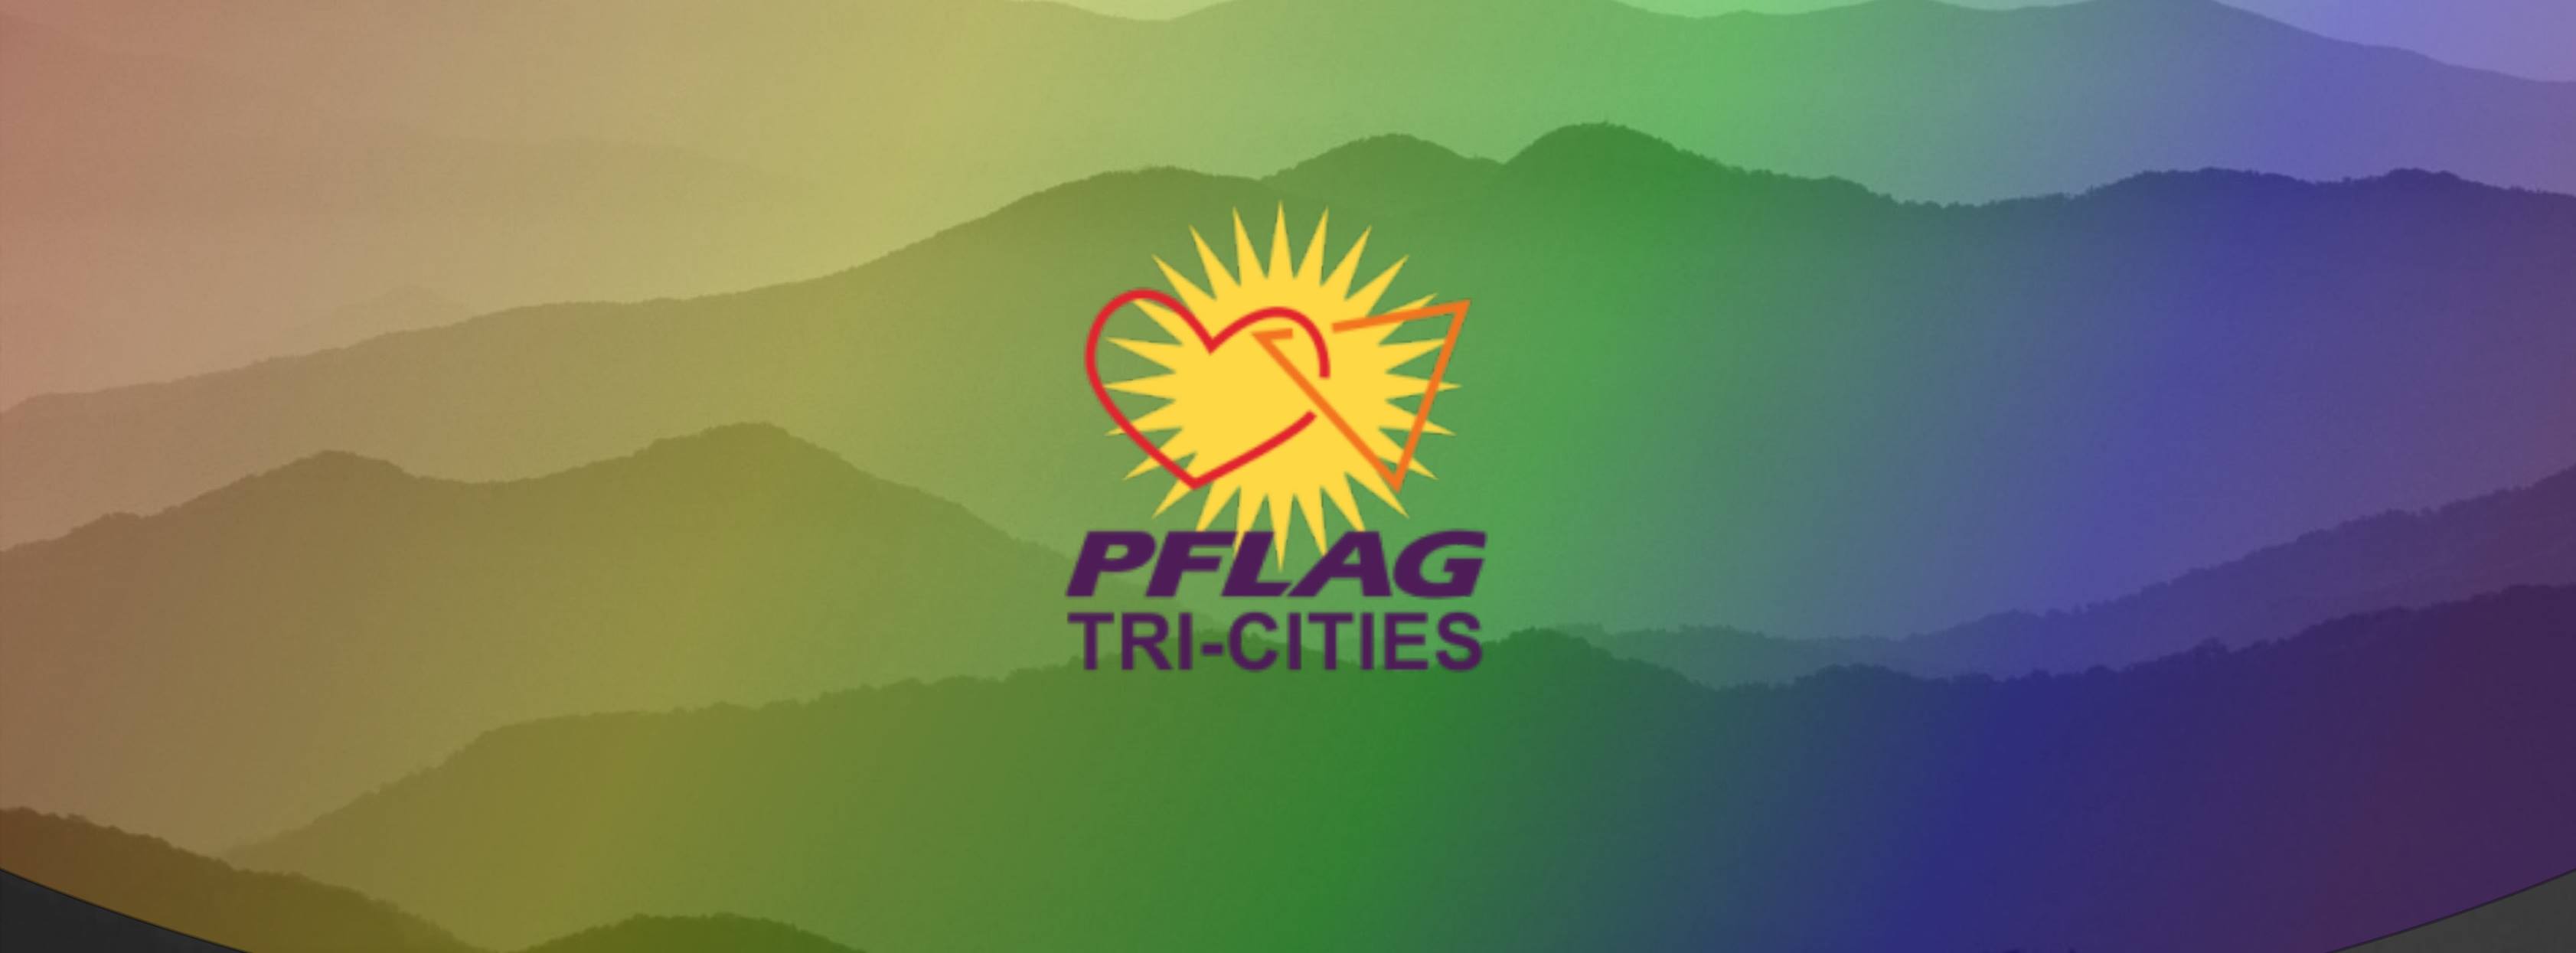 PFLAG Tri-Cities